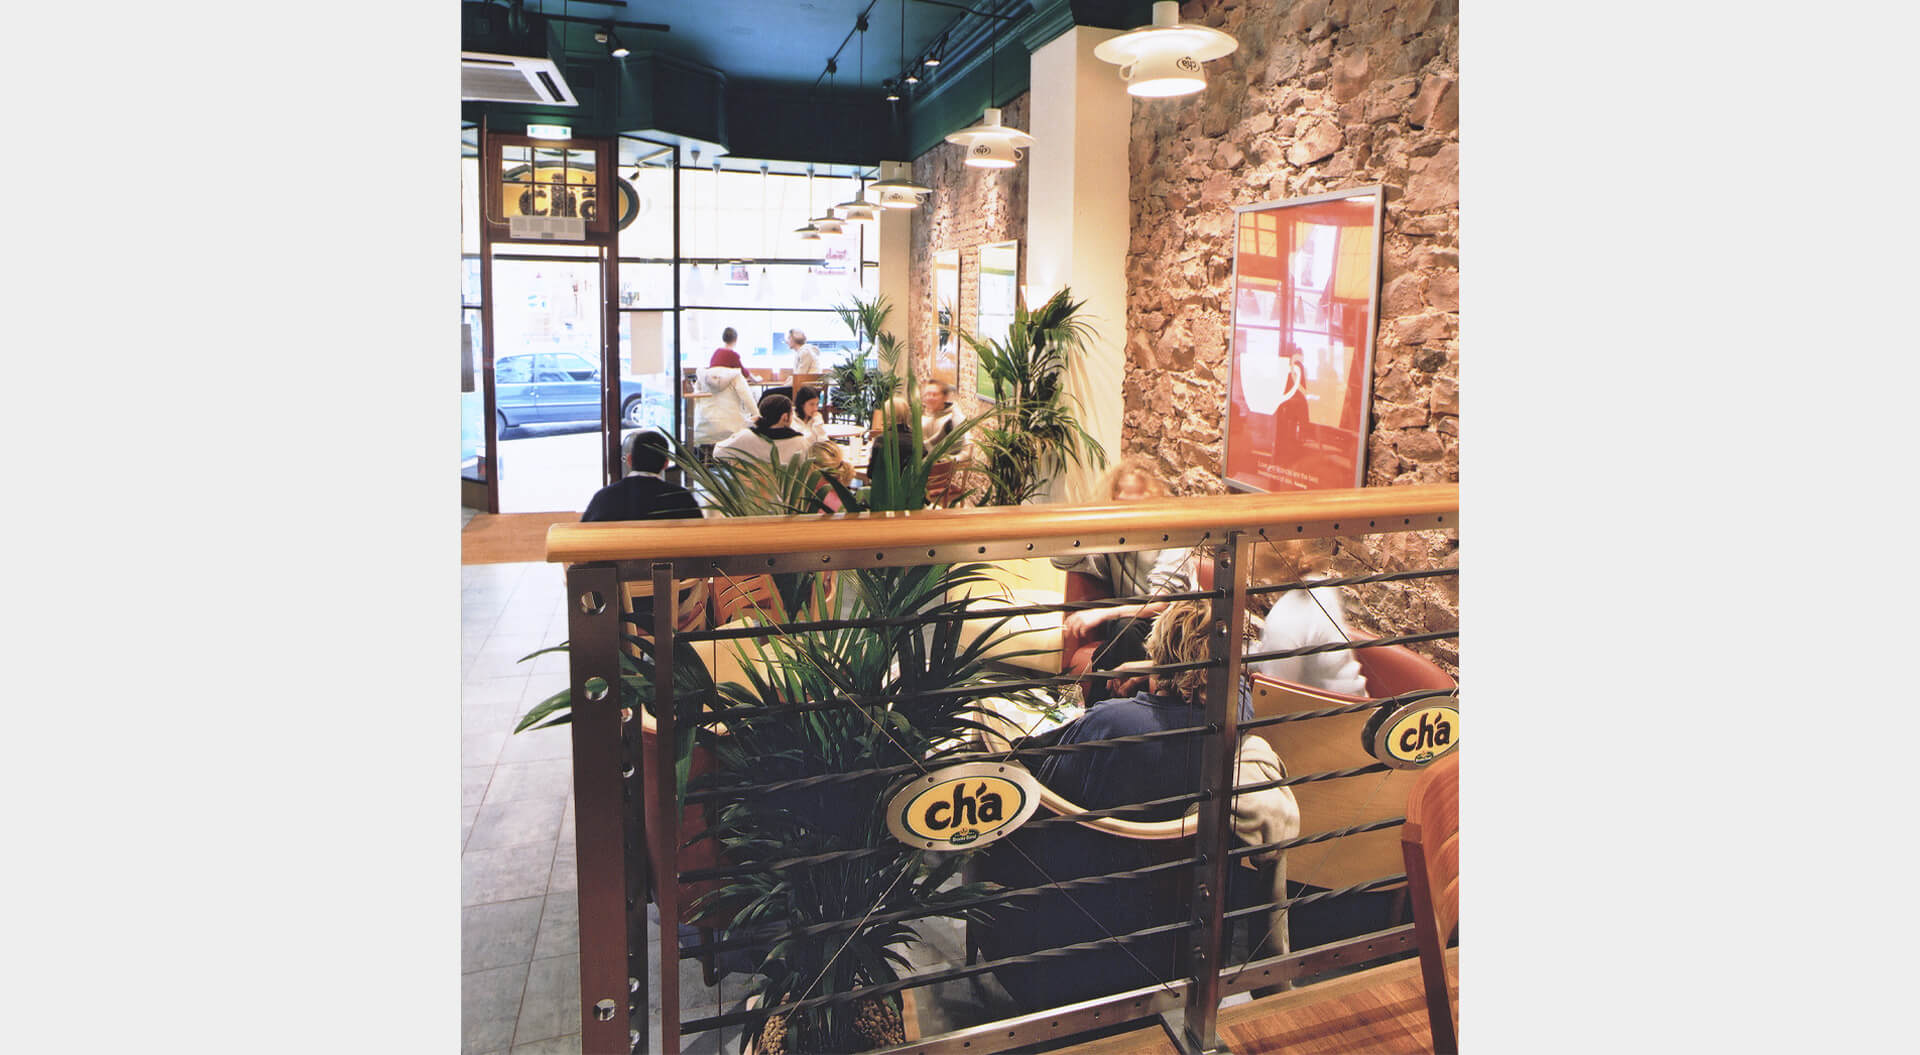 Cha Teahouse café  balustrade design and branding